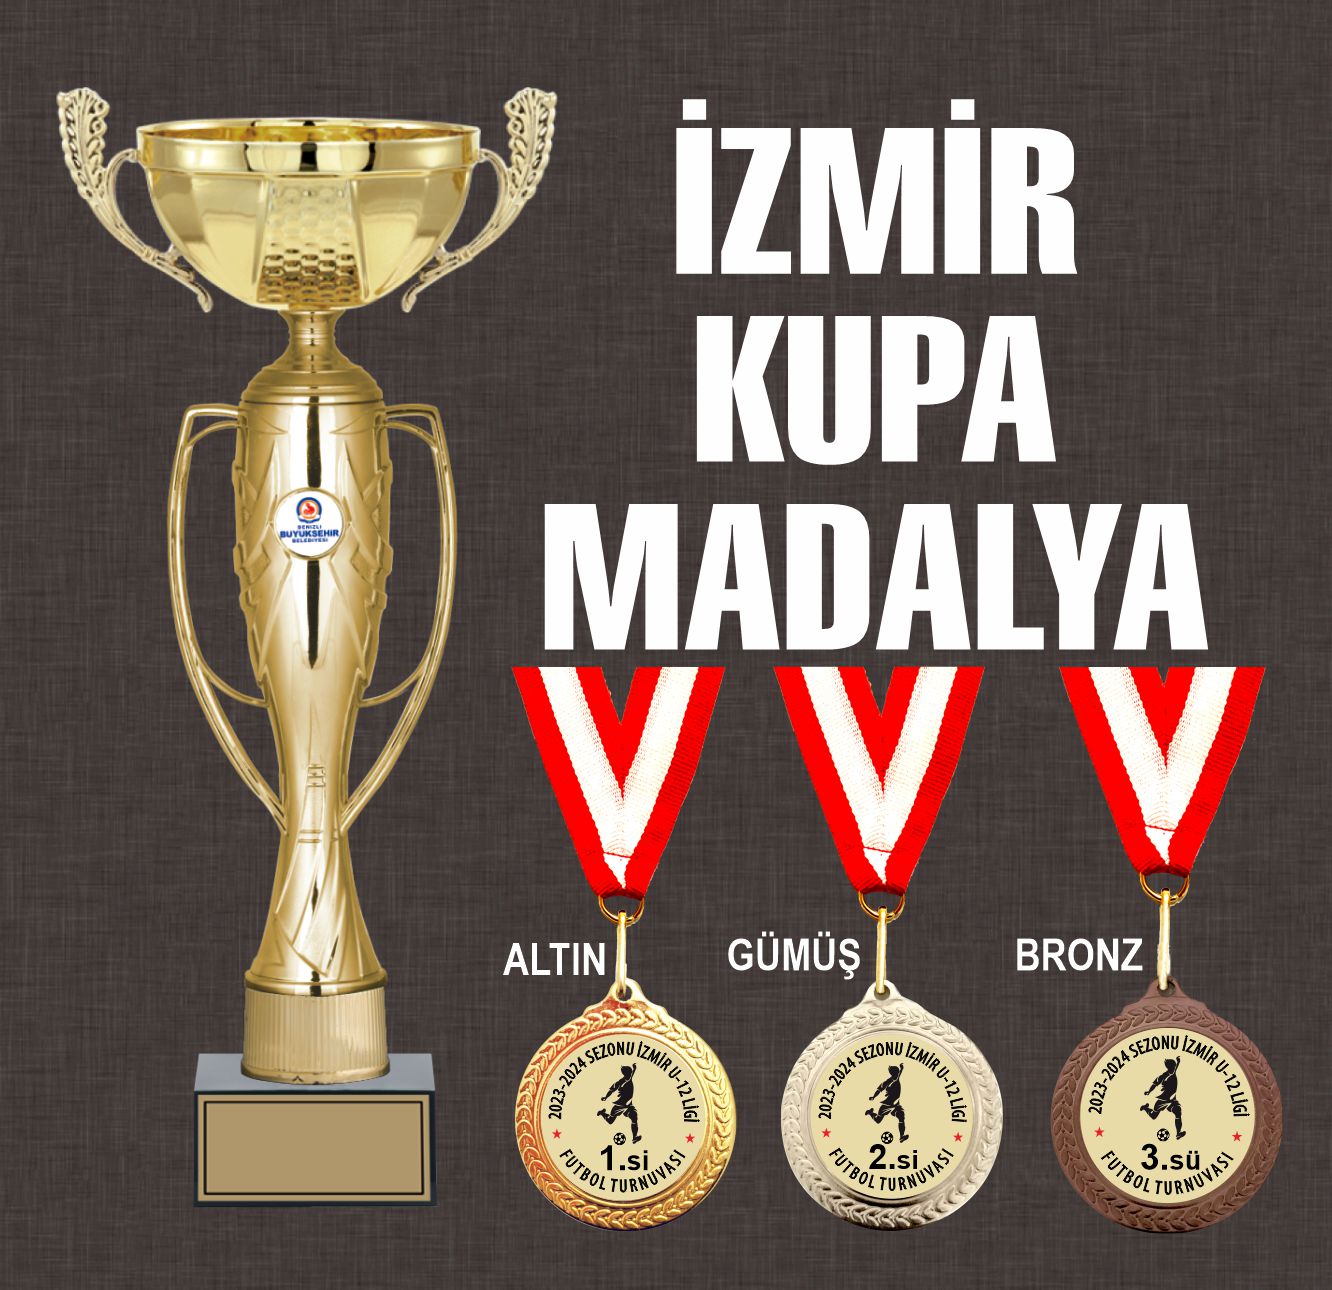 izmir madalya madalyon kupa ödül kupası turnuva kupaları yarışma örnekleri modelleri çeşitleri en ucuz yapan yerler firmalar toplu sipariş toptan 1